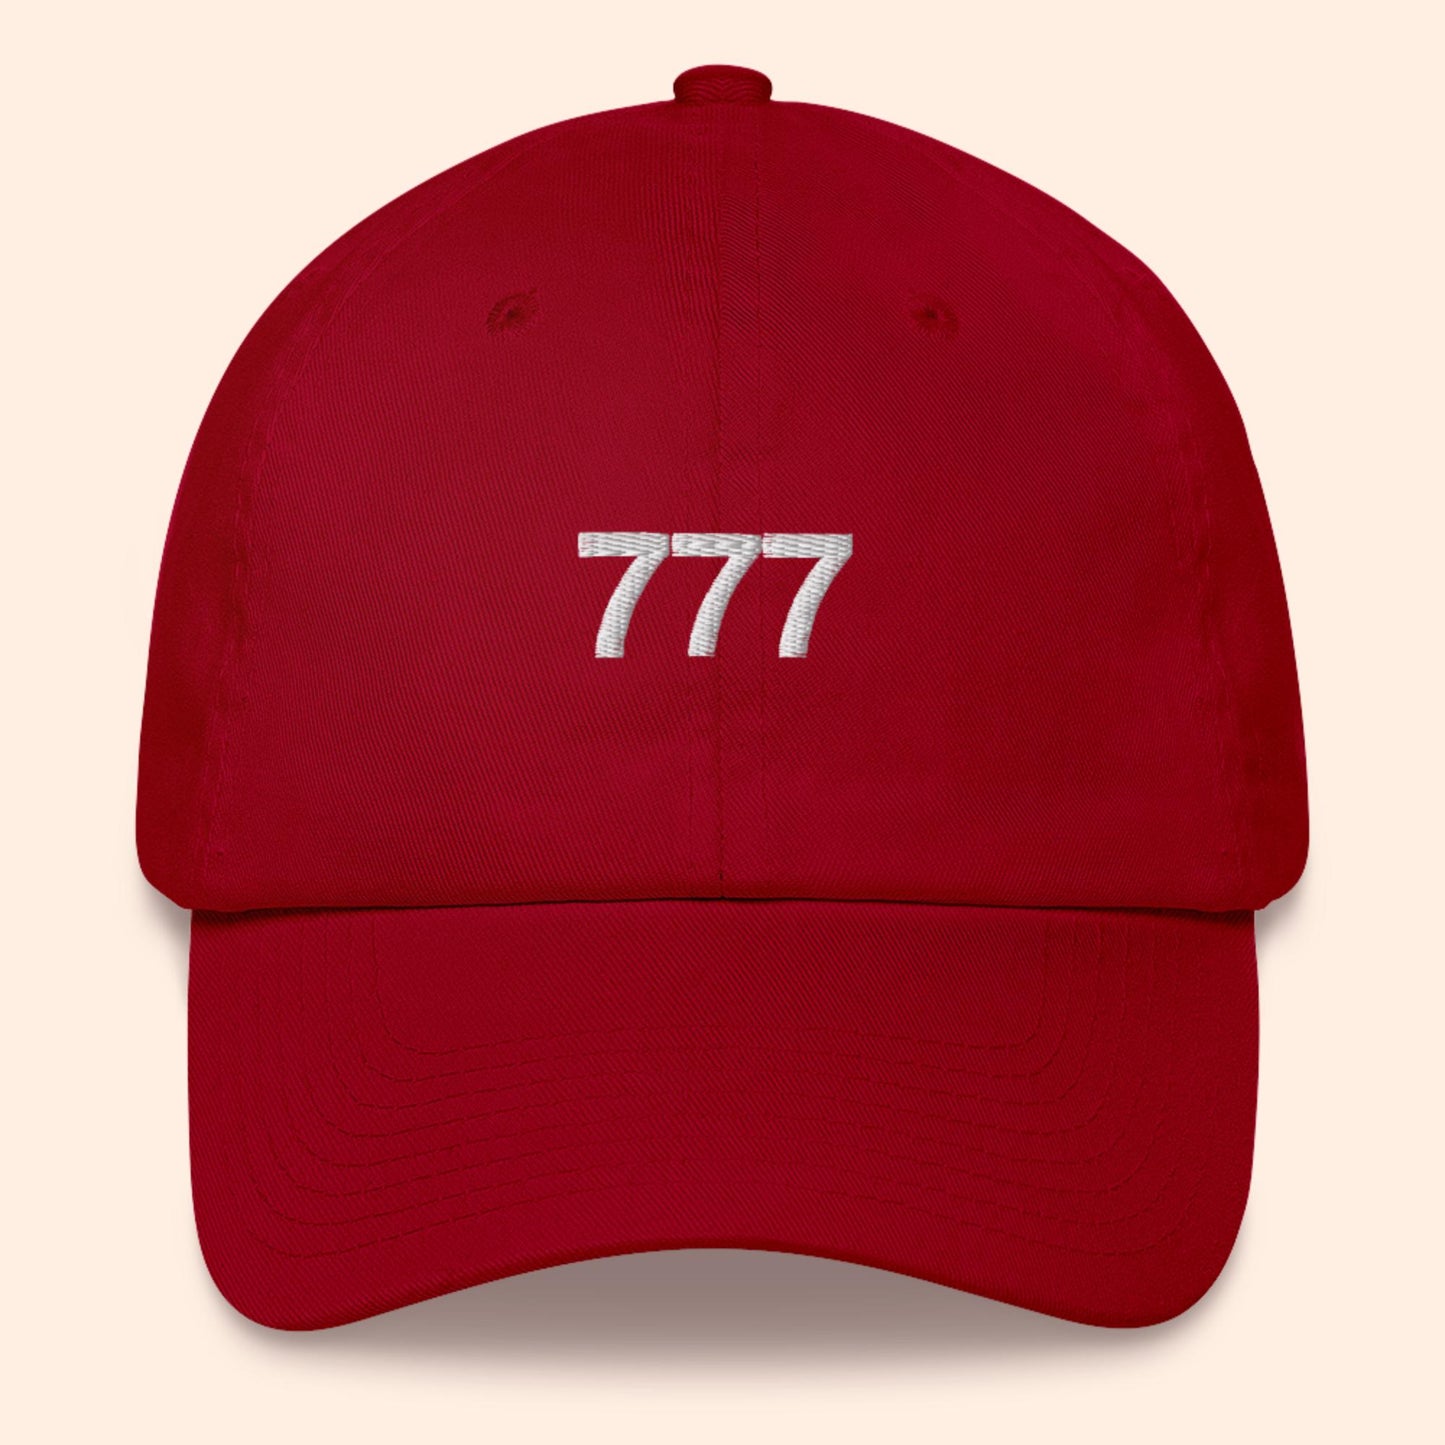 777 Angel Number Hat